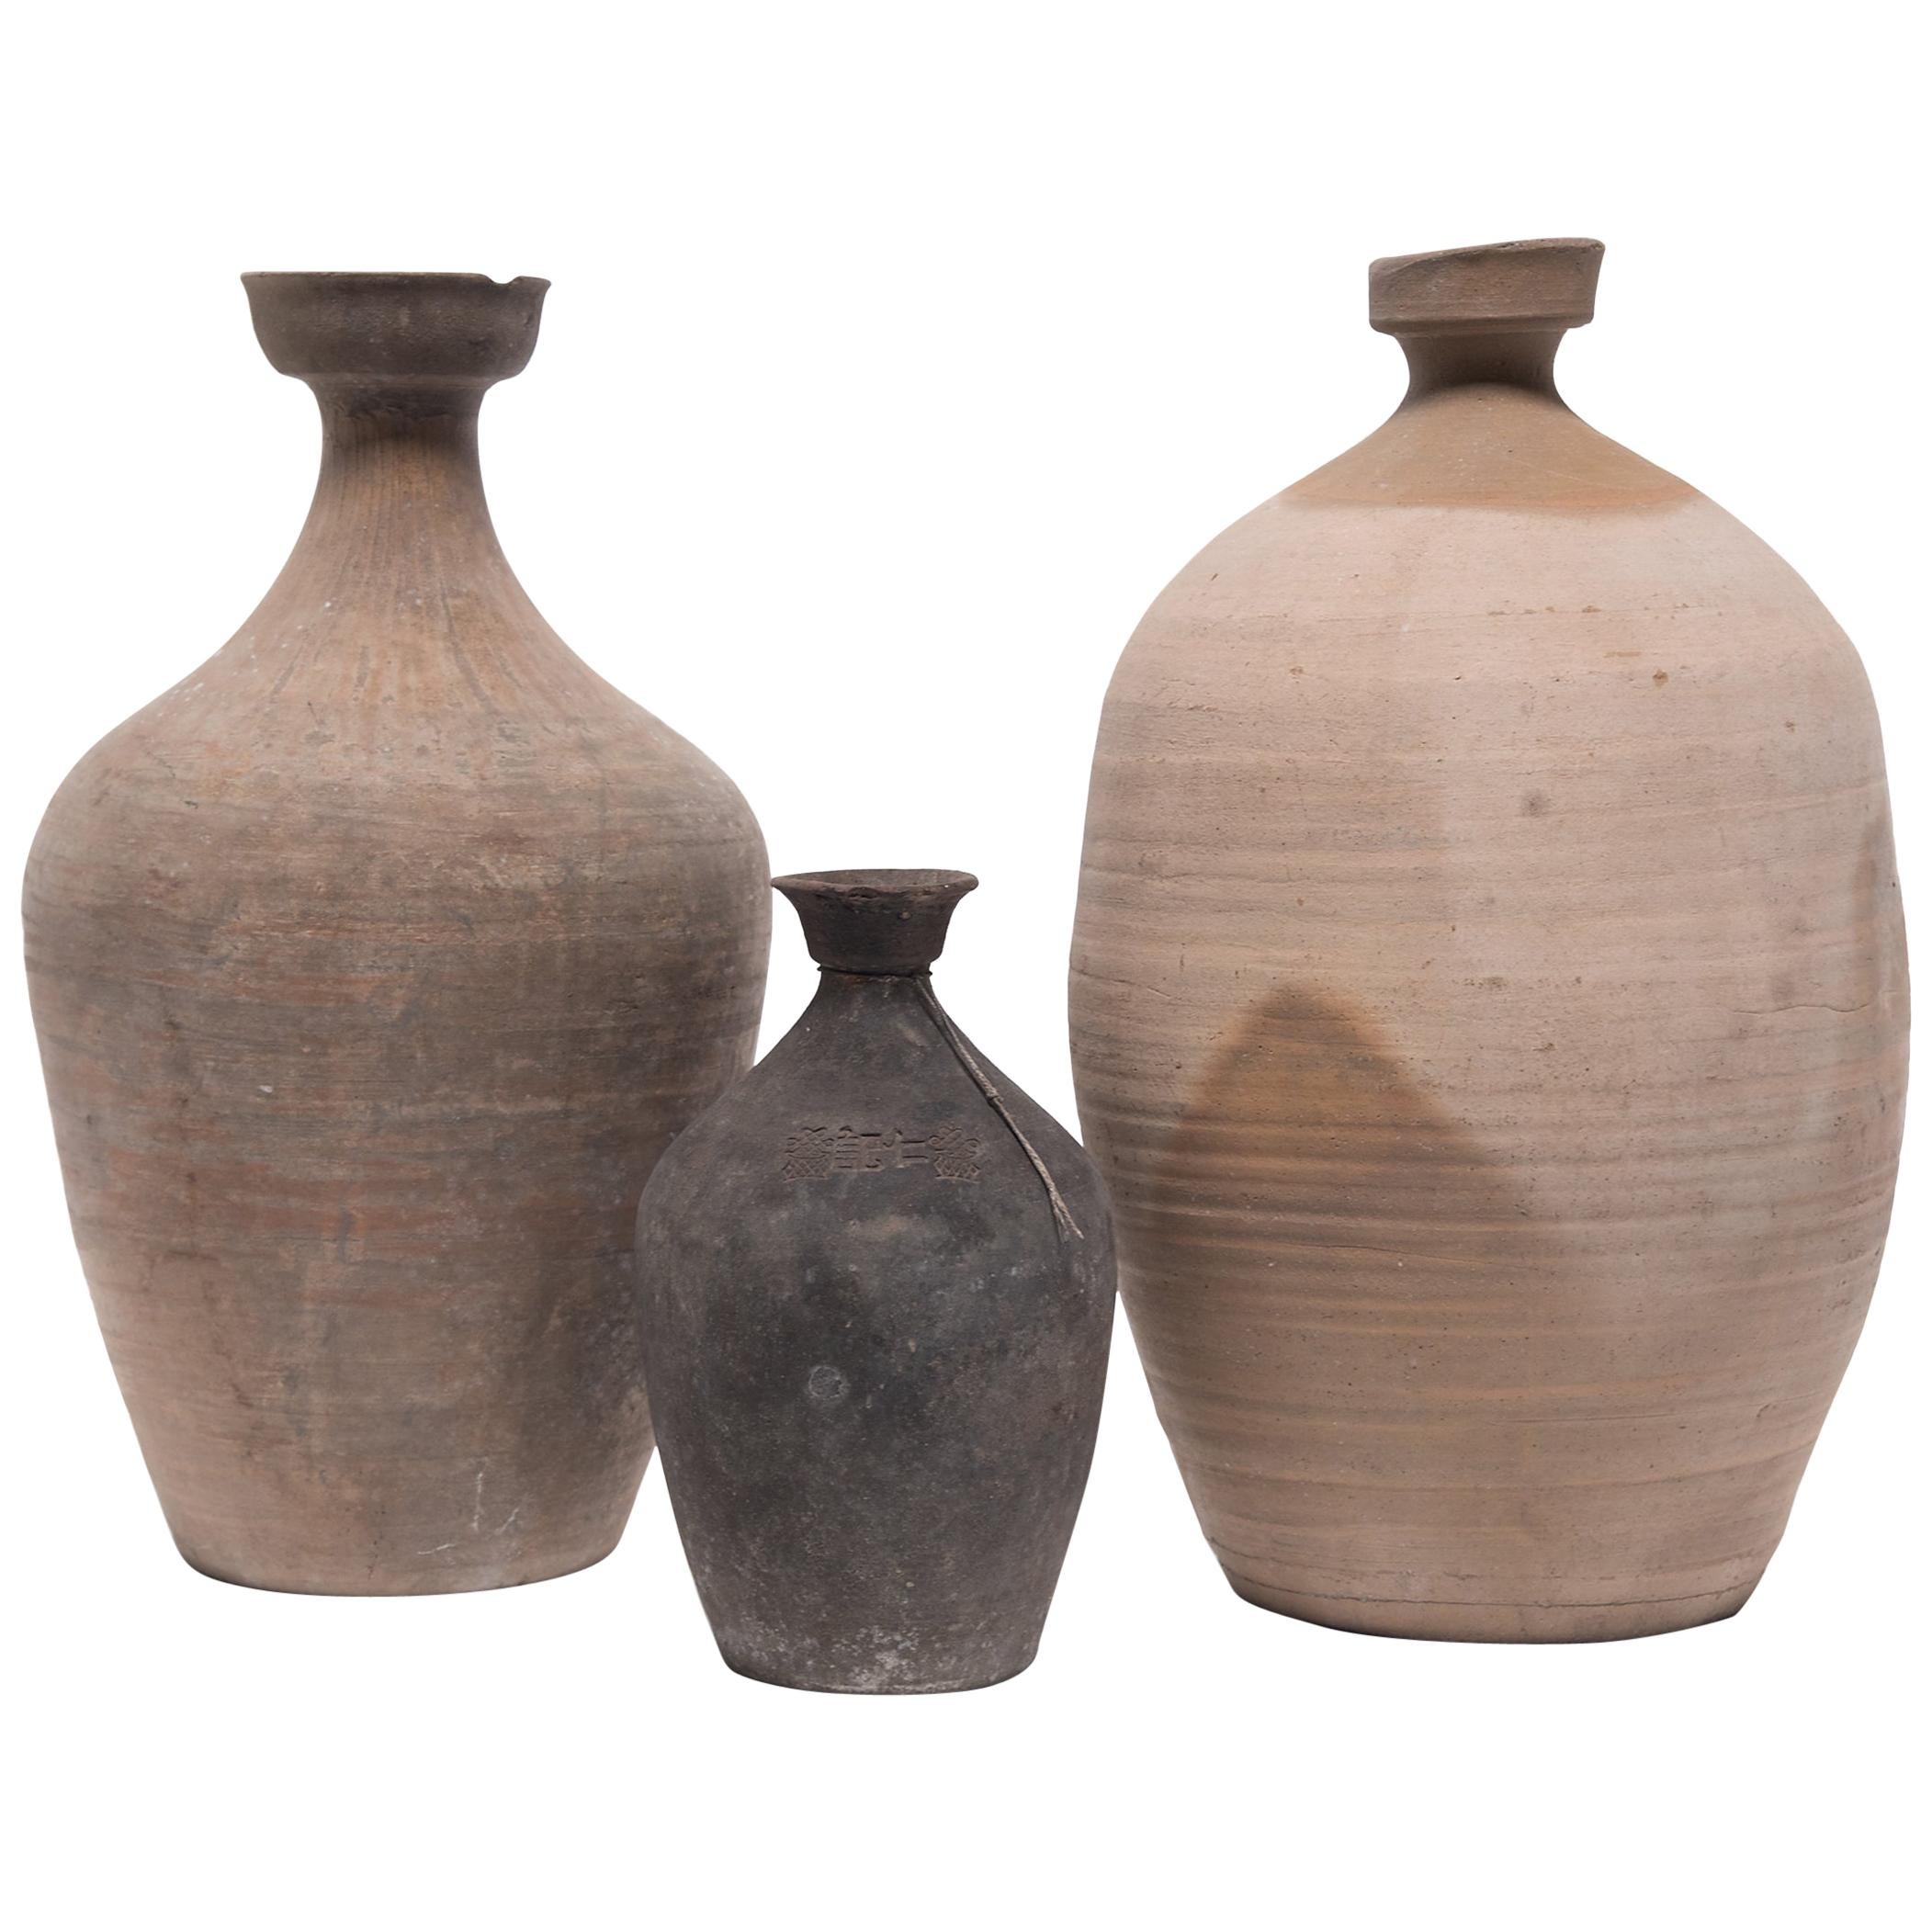 Ensemble de trois cruches à vin provinciales chinoises, vers 1900